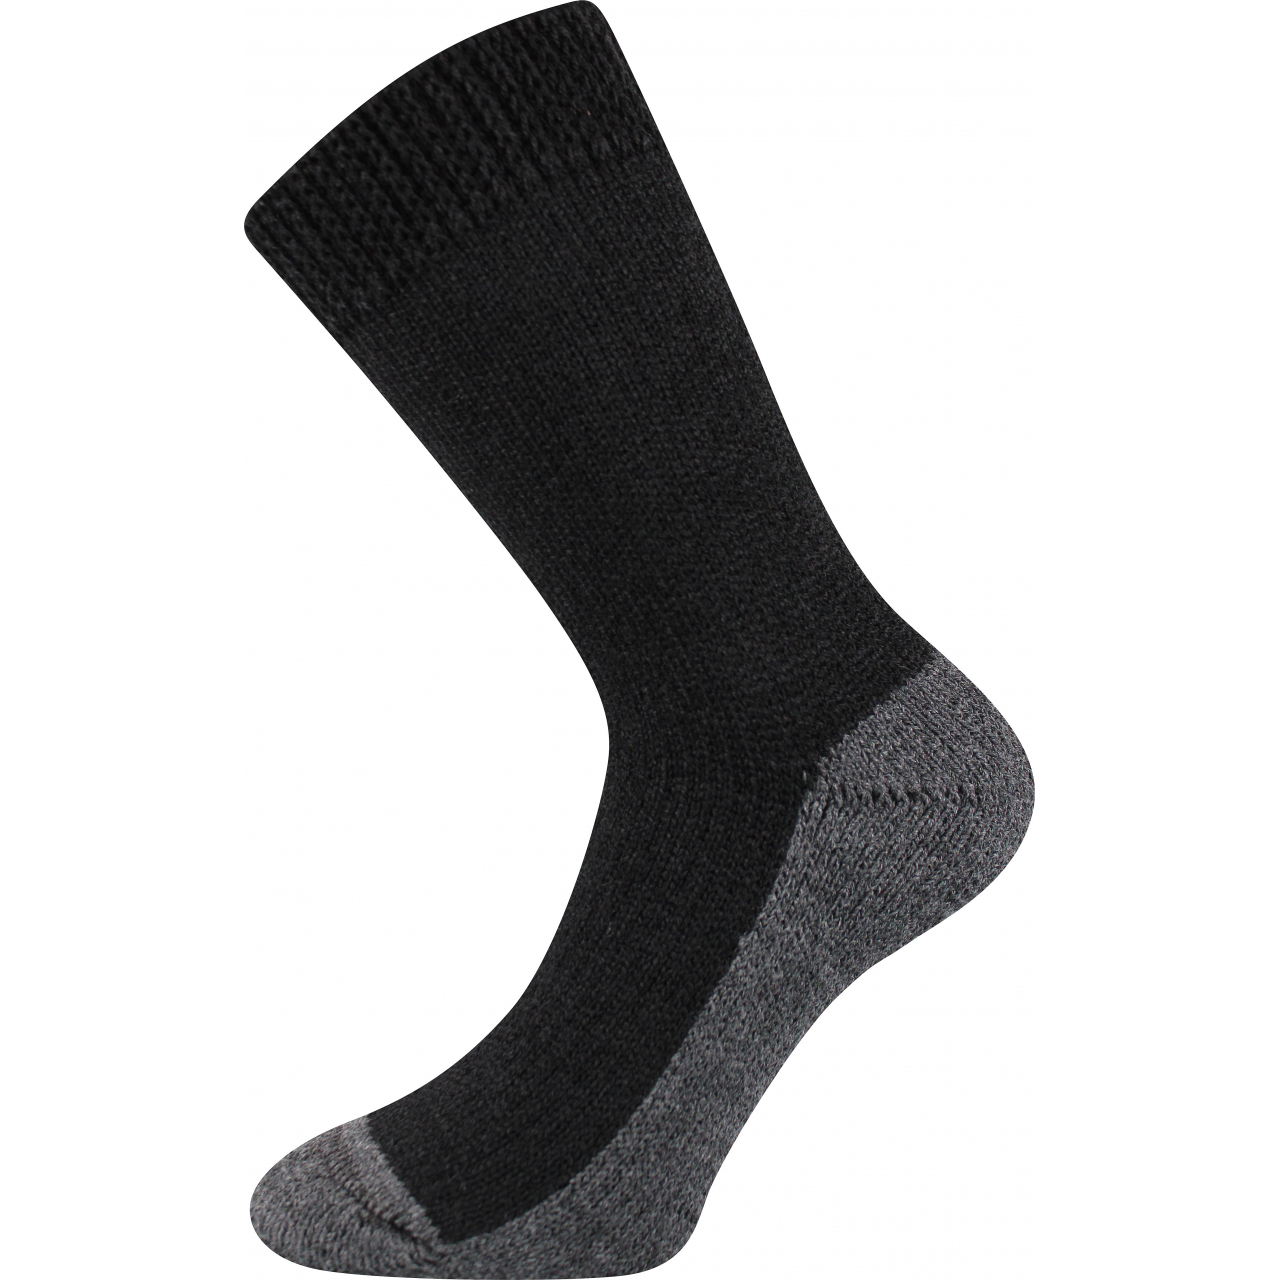 Ponožky unisex Boma Spací - černé, 43-46